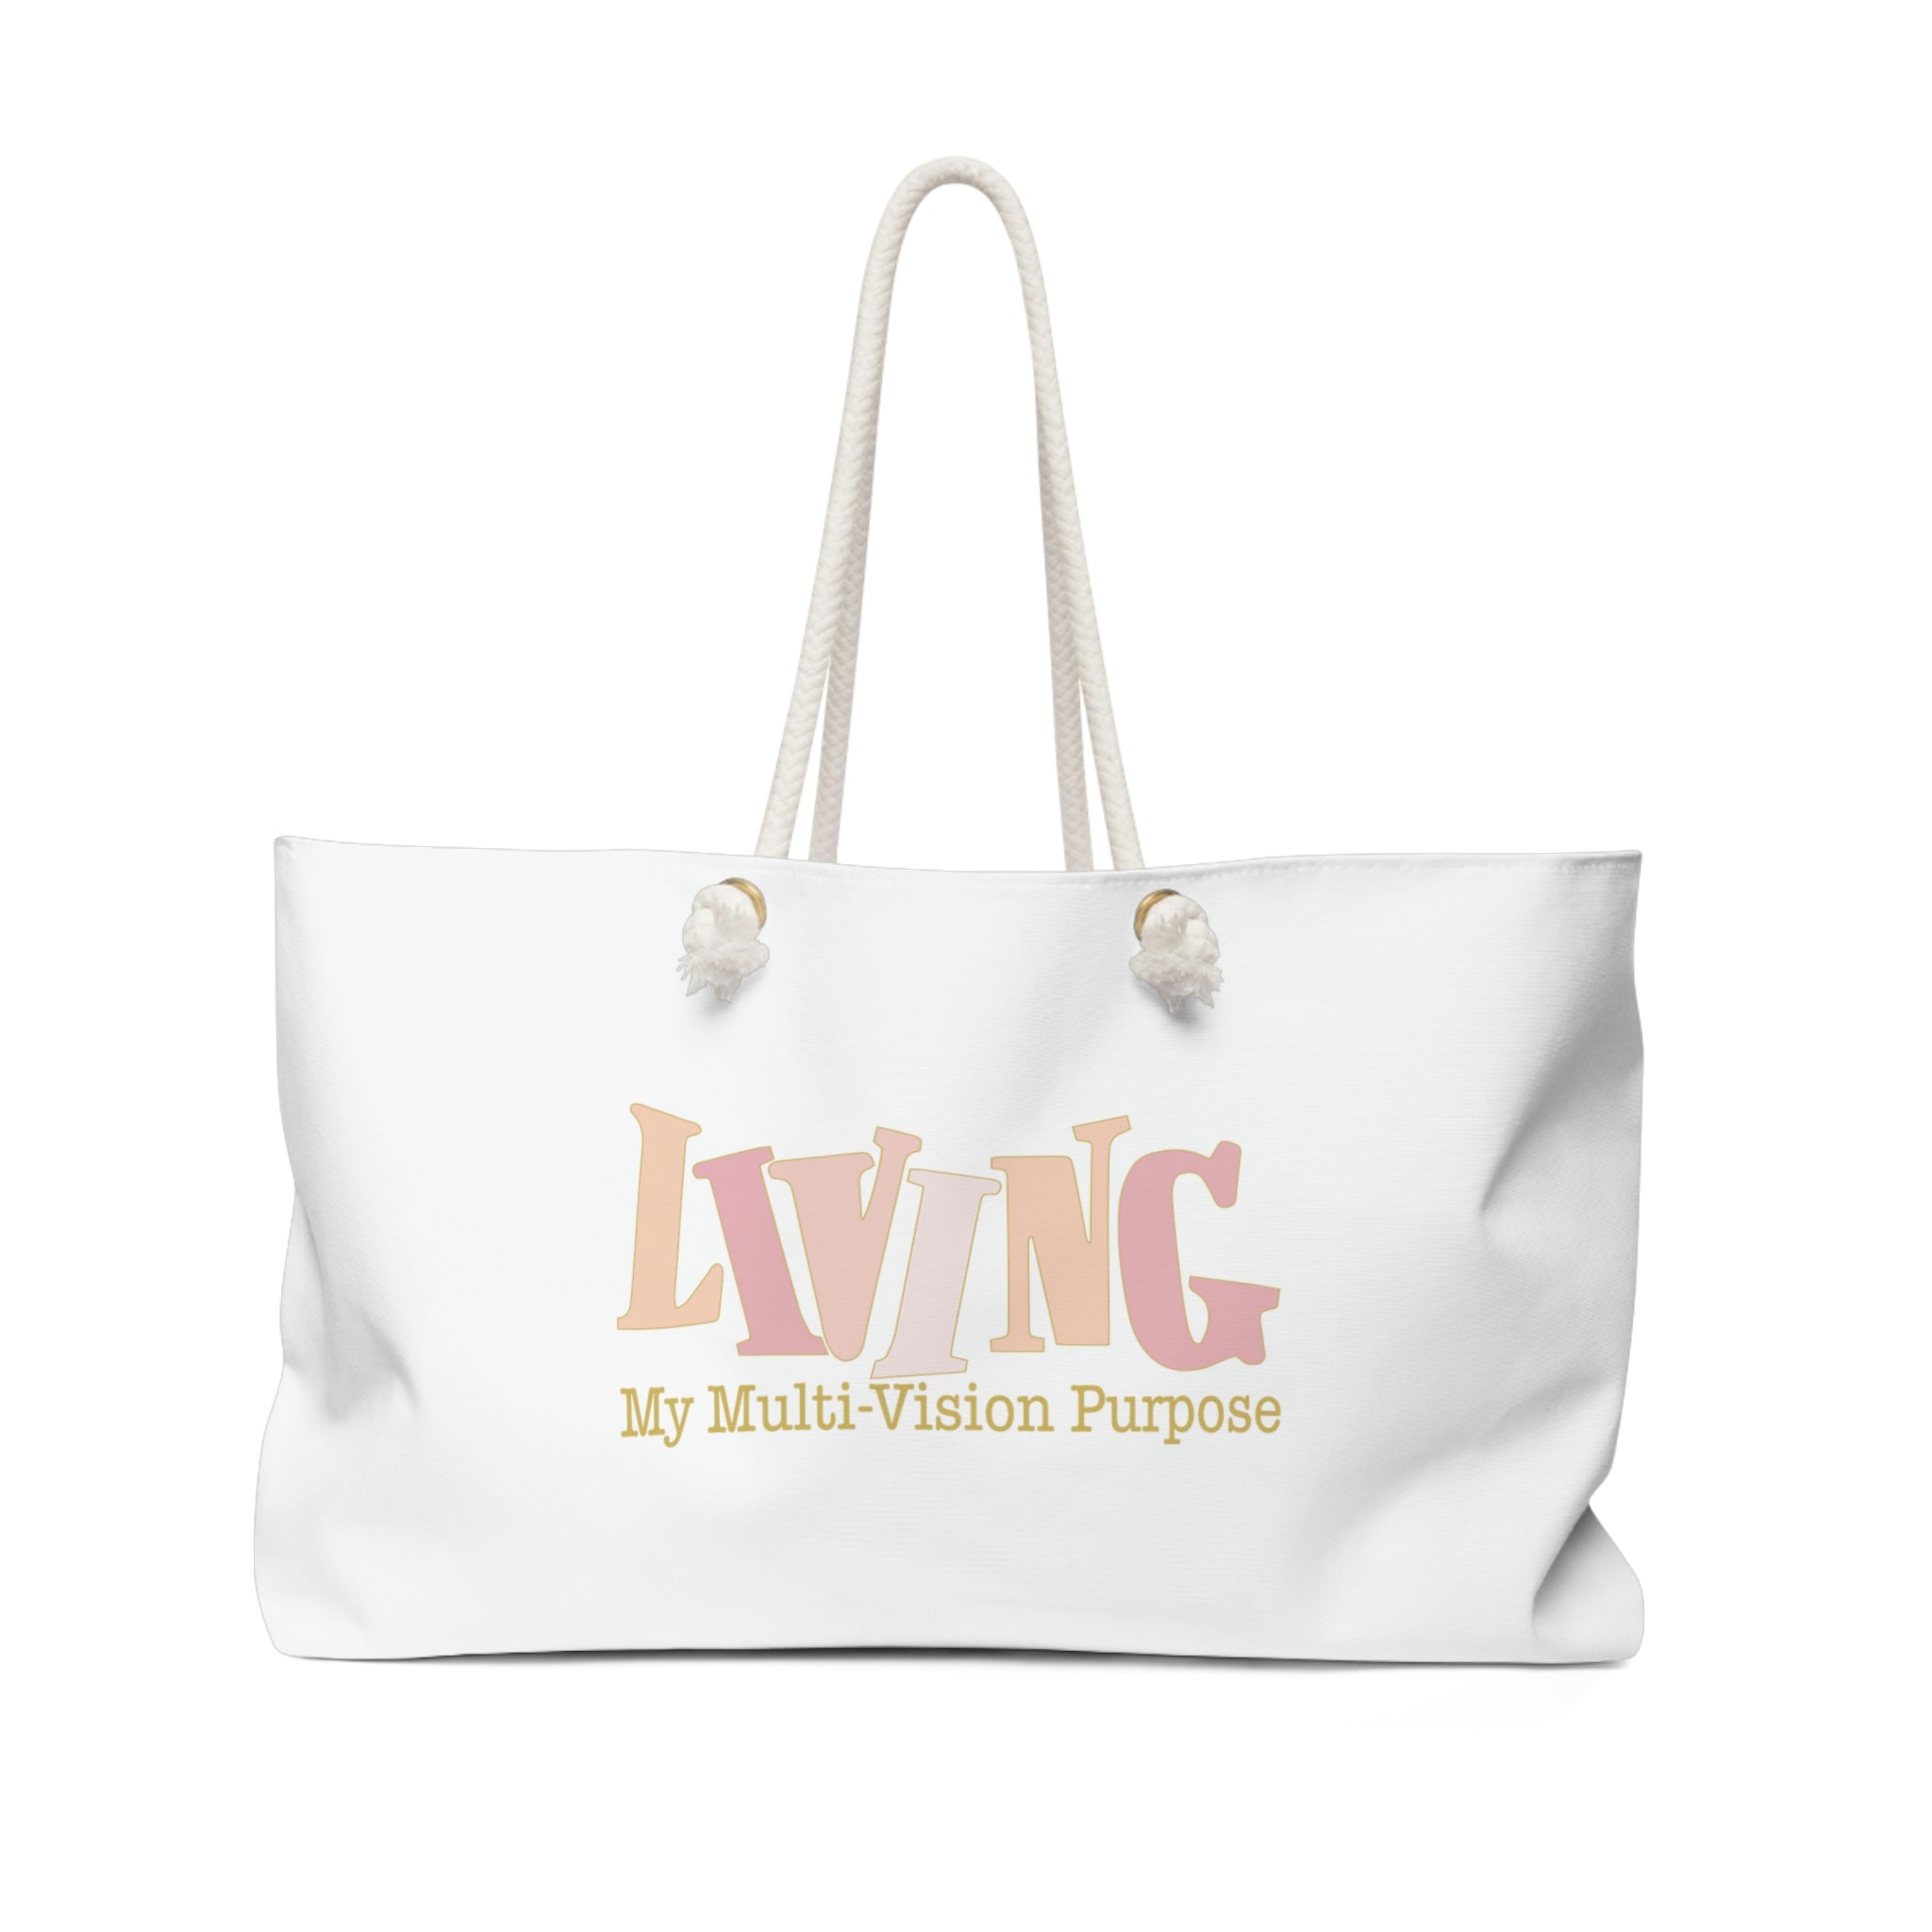 Living My Multi-Vision Purpose Weekender Bag